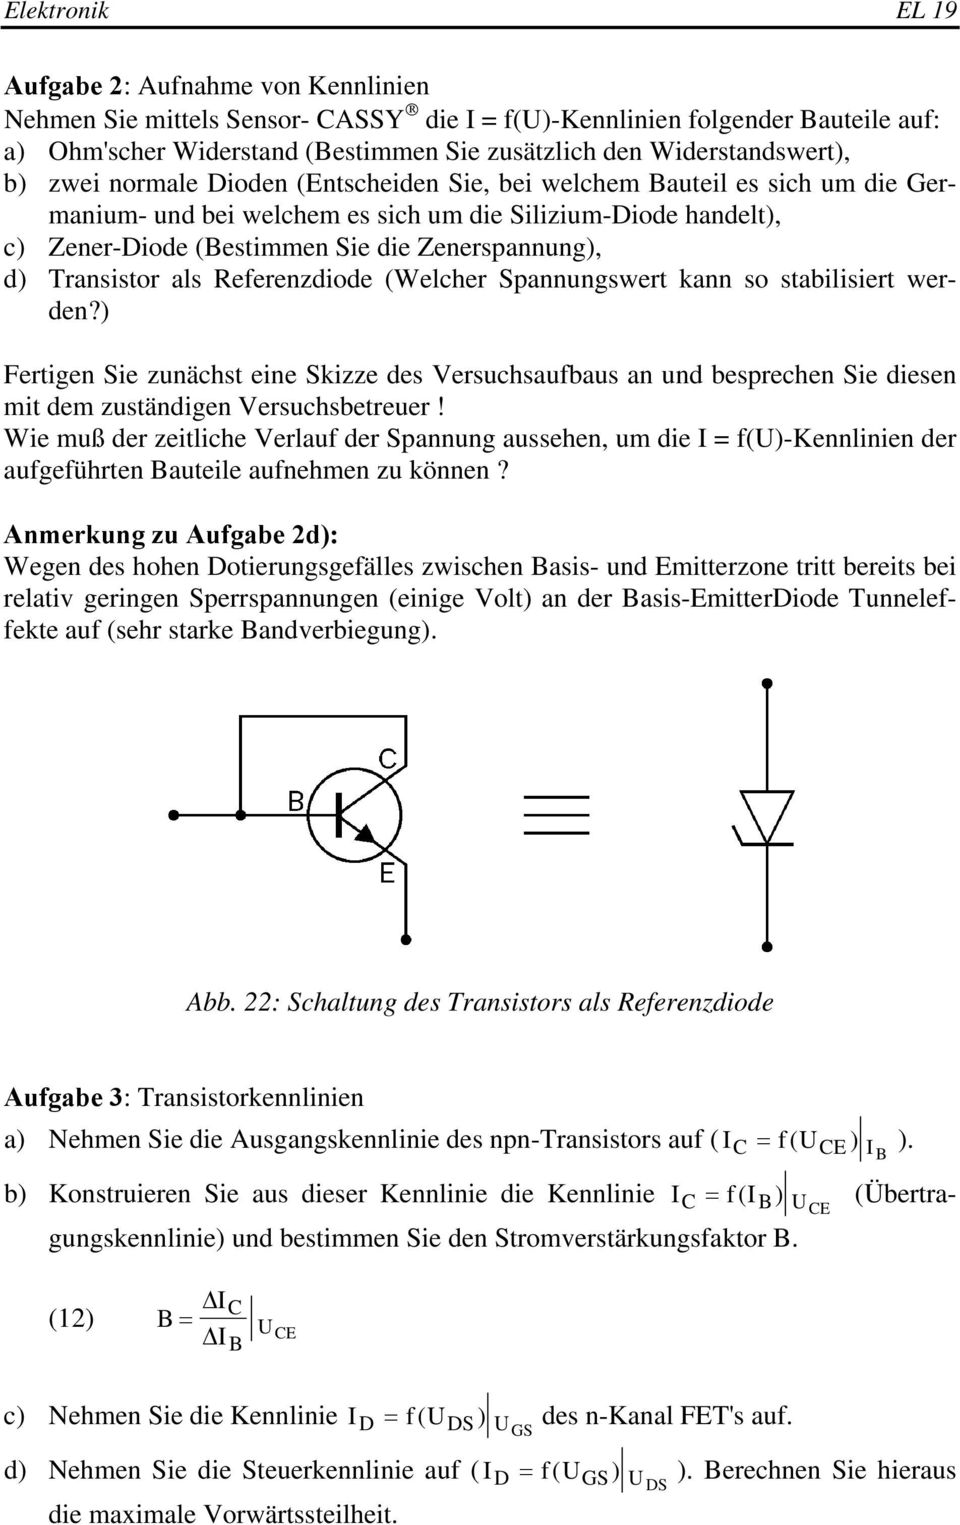 Transistor als Referenzdiode (Welcher Spannungswert kann so stabilisiert werden?